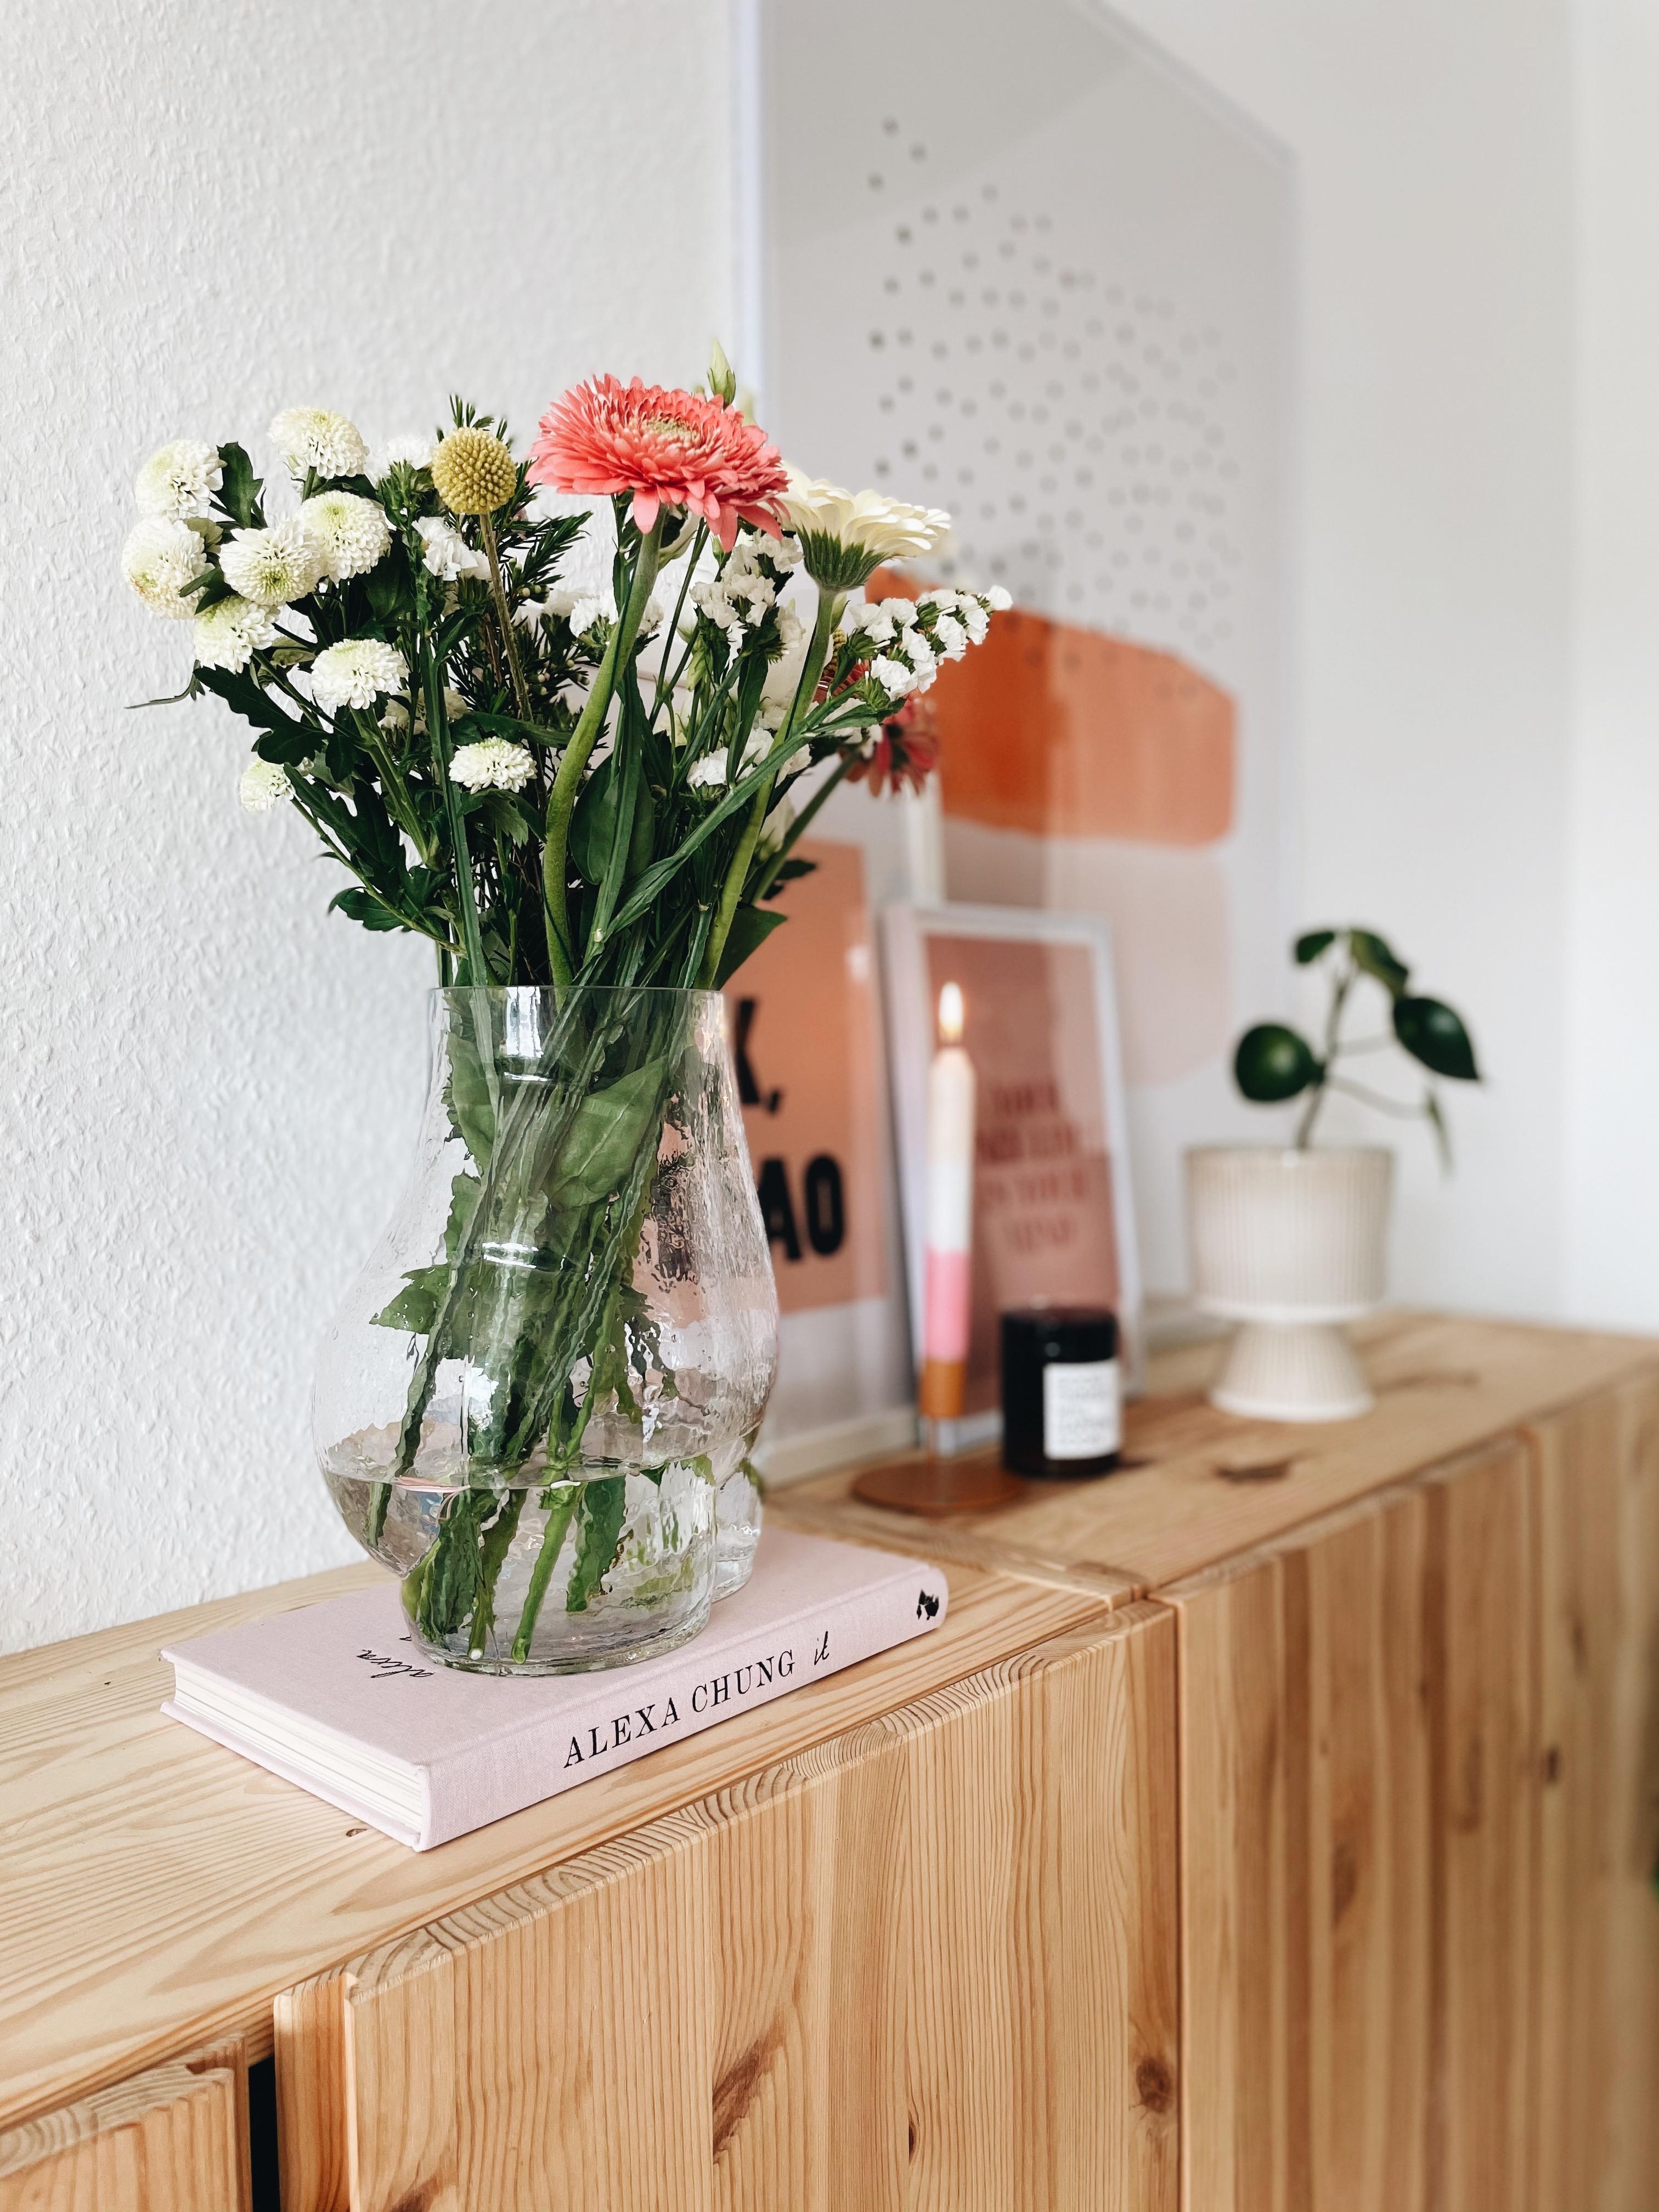 Bootilicious 💐🍑
#freshflowerfriday #blumenliebe #vase #dekoration #frühlingsgefühle #couchstyle 